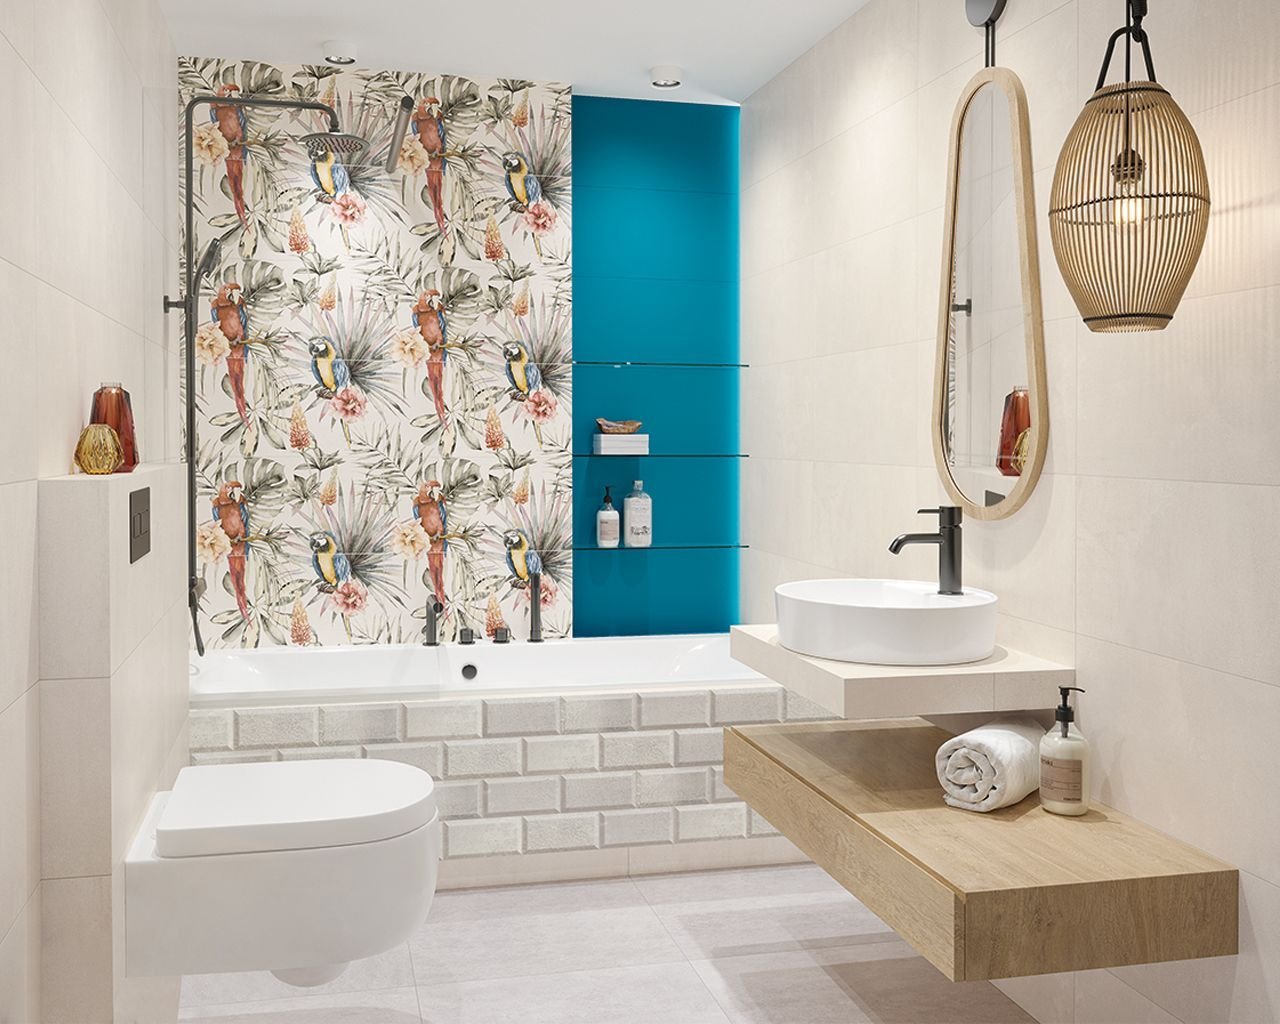 #Koupelna #Moderní styl #bílá #modrá #Velký formát #Matný obklad #500 - 700 Kč/m2 #Ceramika Paradyz #Happines